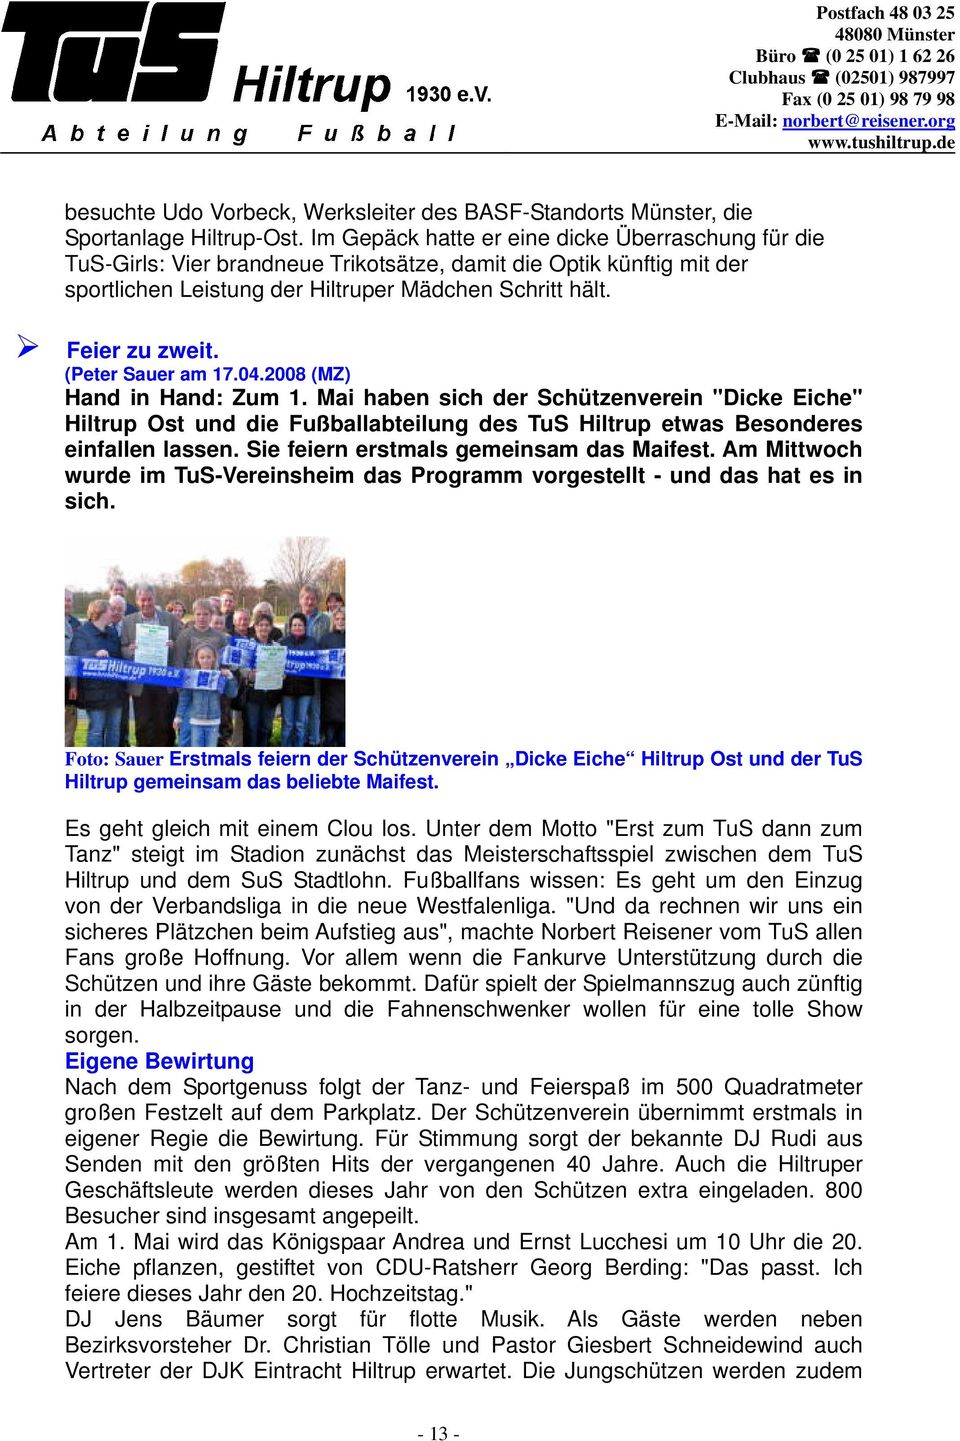 (Peter Sauer am 17.04.2008 (MZ) Hand in Hand: Zum 1. Mai haben sich der Schützenverein "Dicke Eiche" Hiltrup Ost und die Fußballabteilung des TuS Hiltrup etwas Besonderes einfallen lassen.